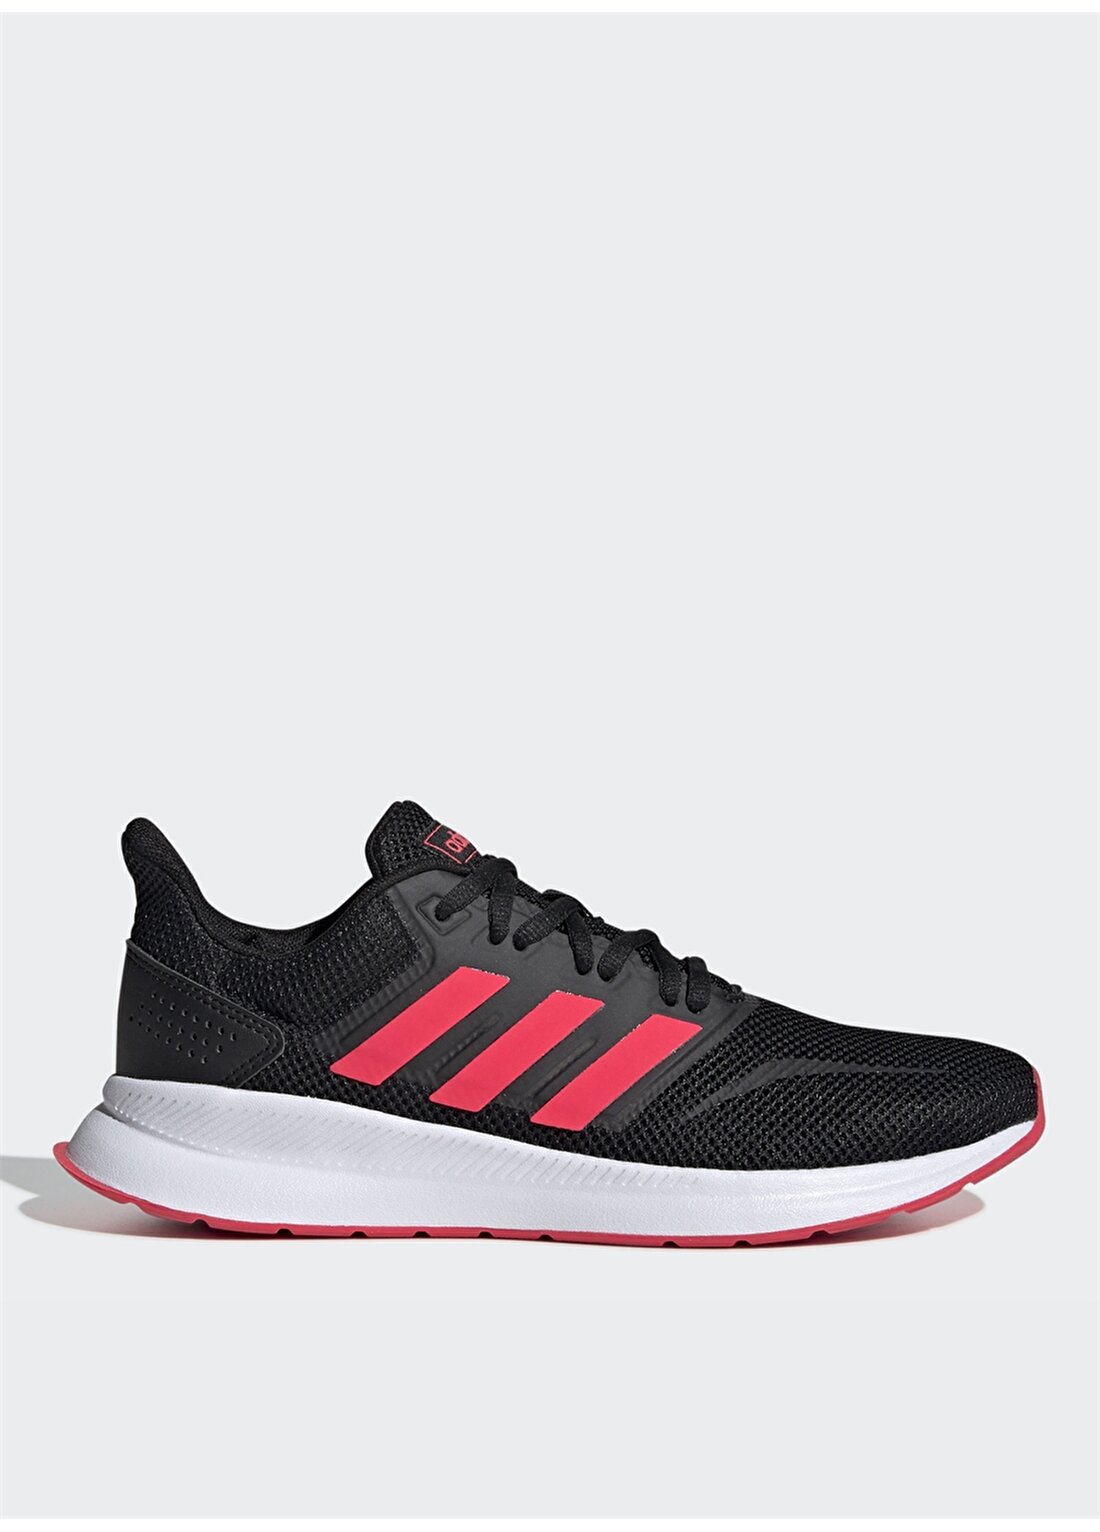 Adidas Siyah - Kırmızı Kadın Koşu Ayakkabısı